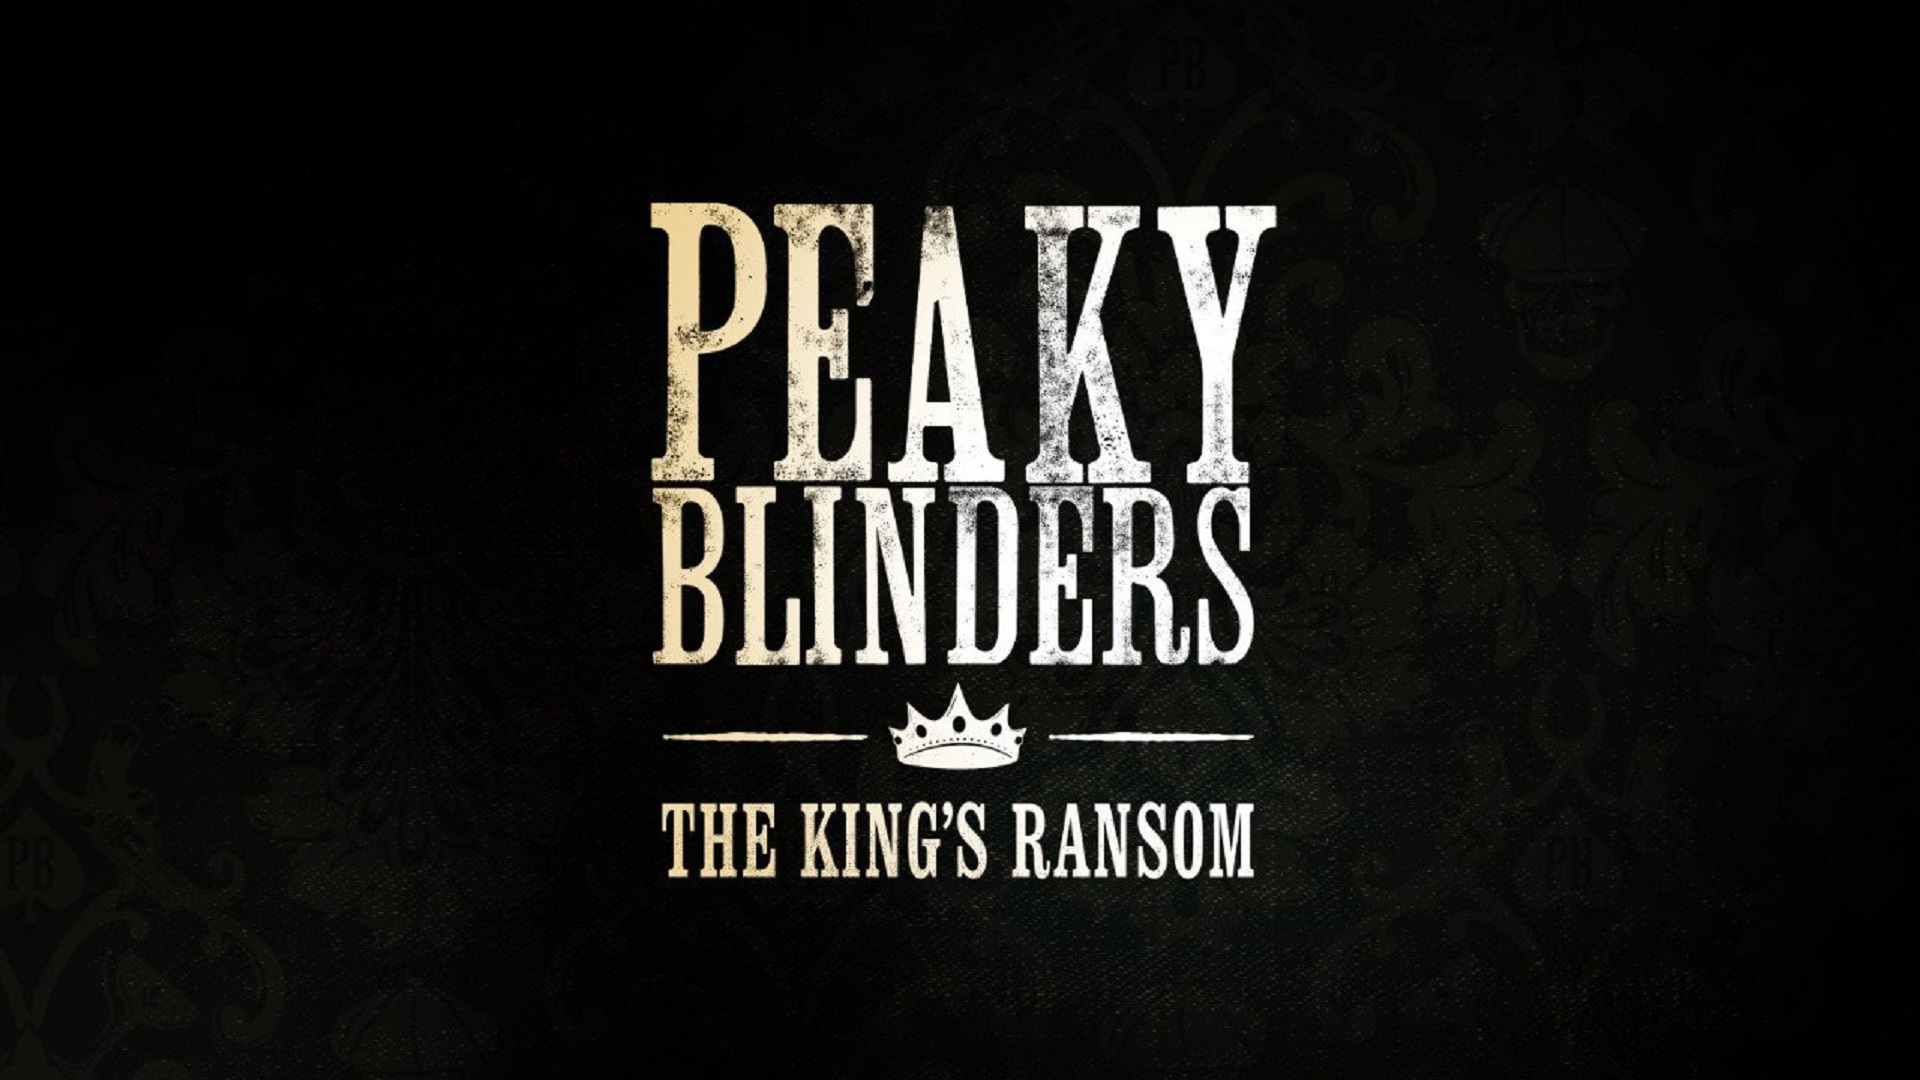 یک بازی واقعیت مجازی بر اساس سریال Peaky Blinders معرفی شد